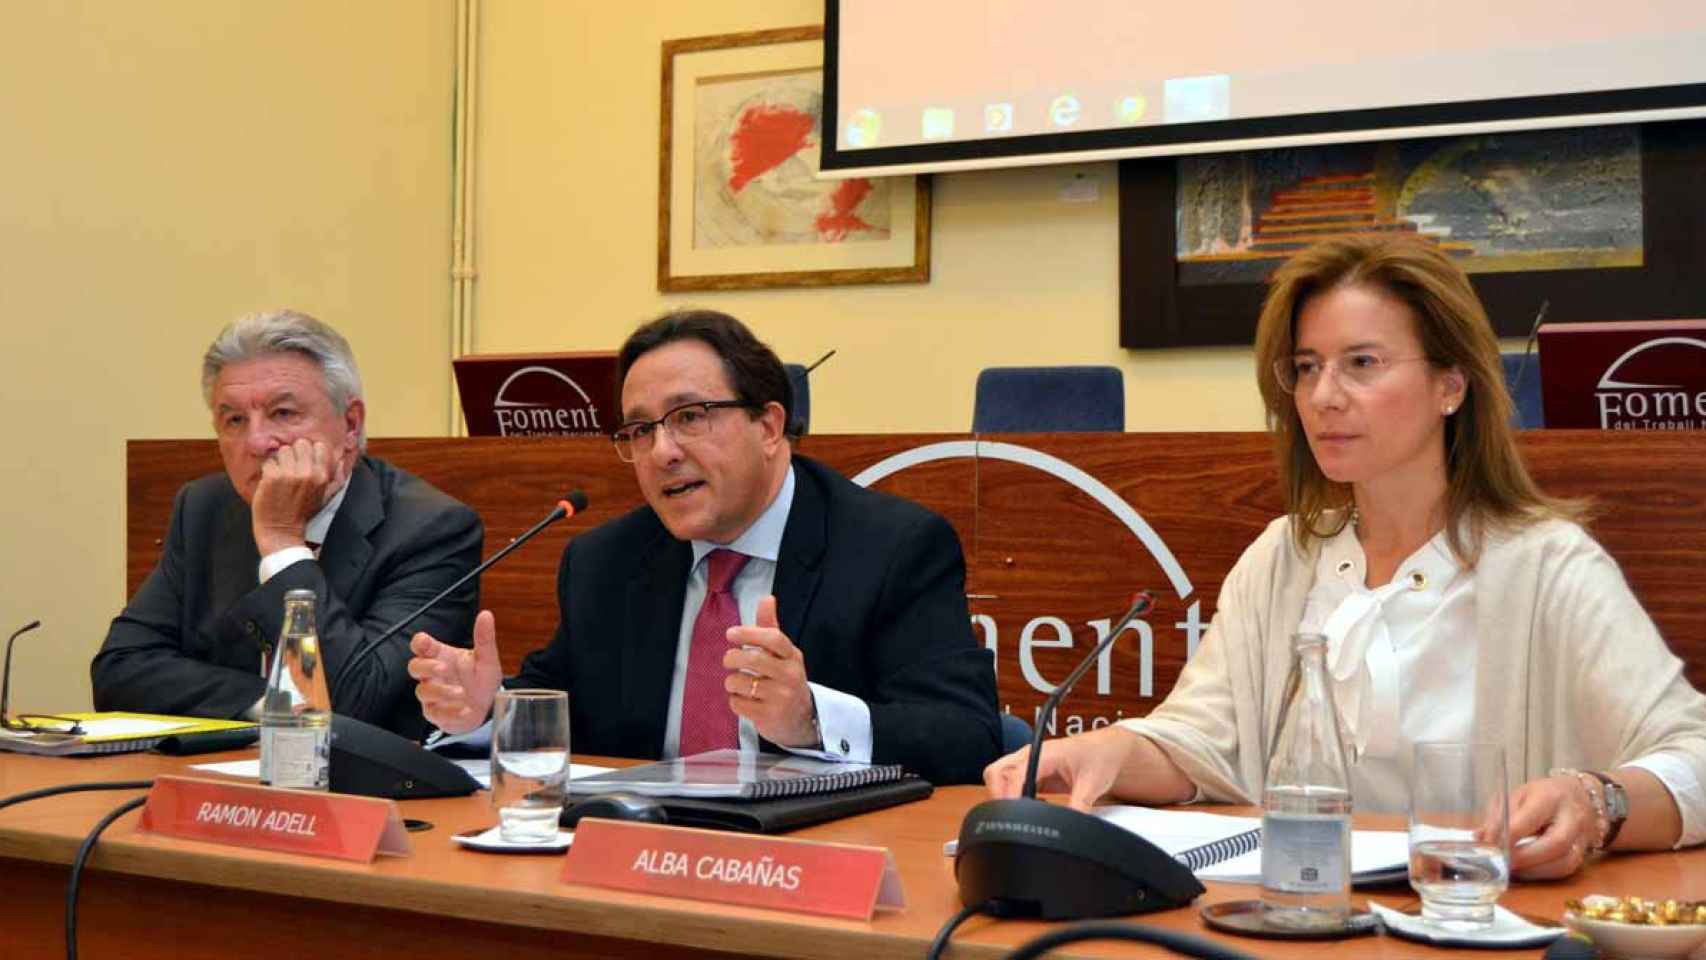 Ramón Adell, en el centro, es vicepresidente de Foment del Treball / FT